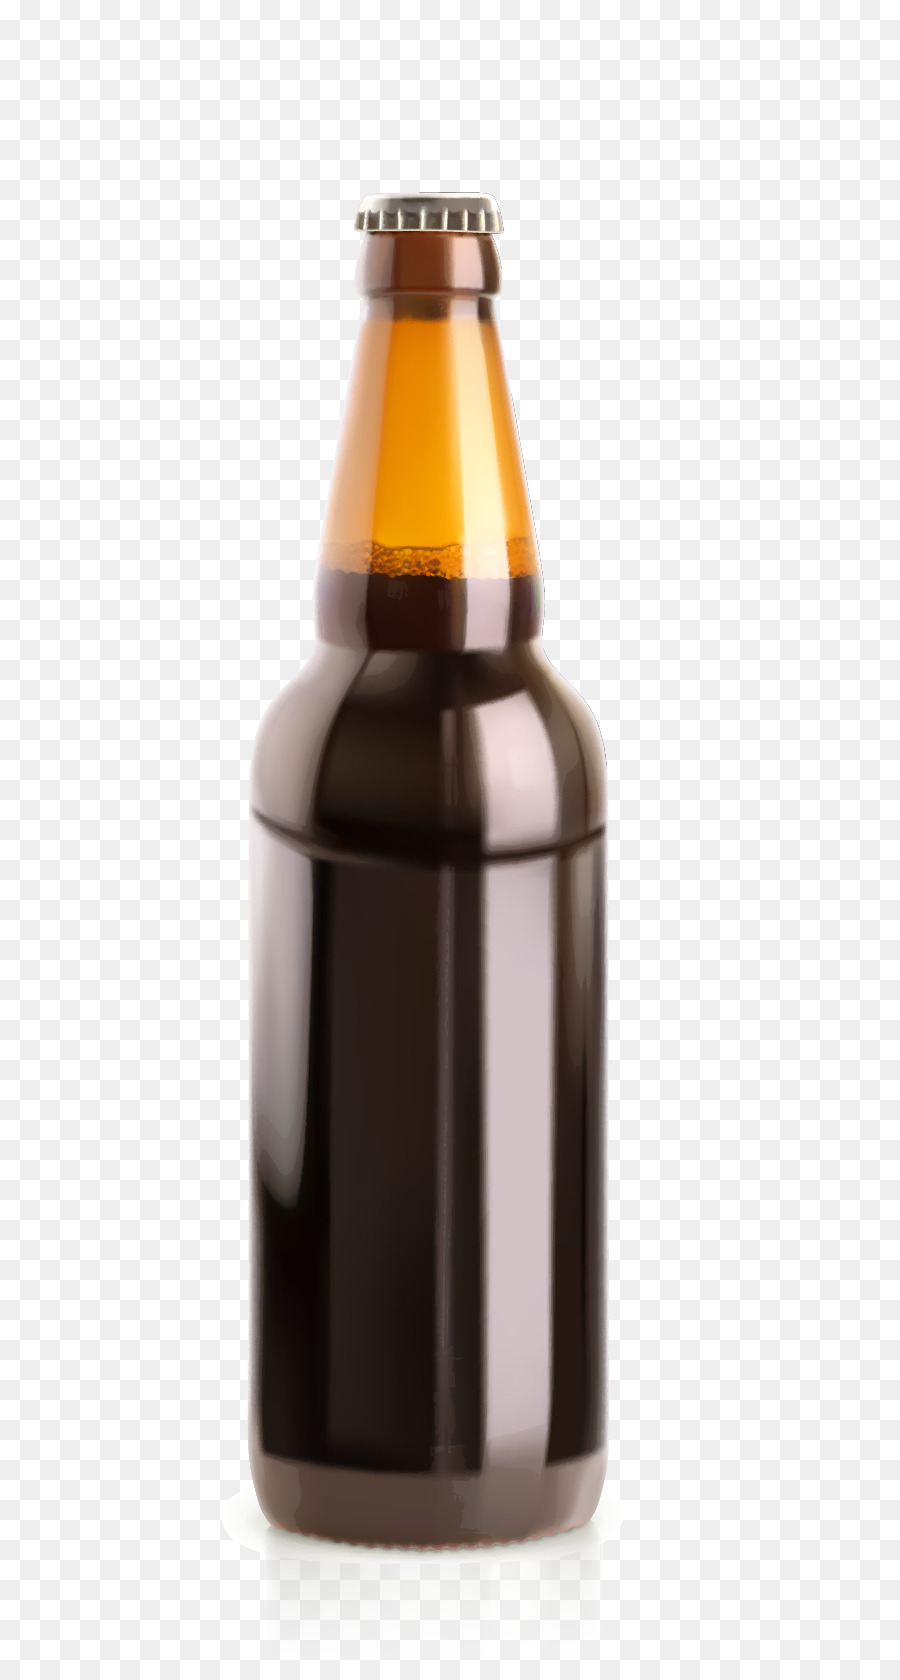 Beer Bottle Glass Illustration - Sesame oil bottles vector material png download - 631*1668 - Free Transparent Beer png Download.